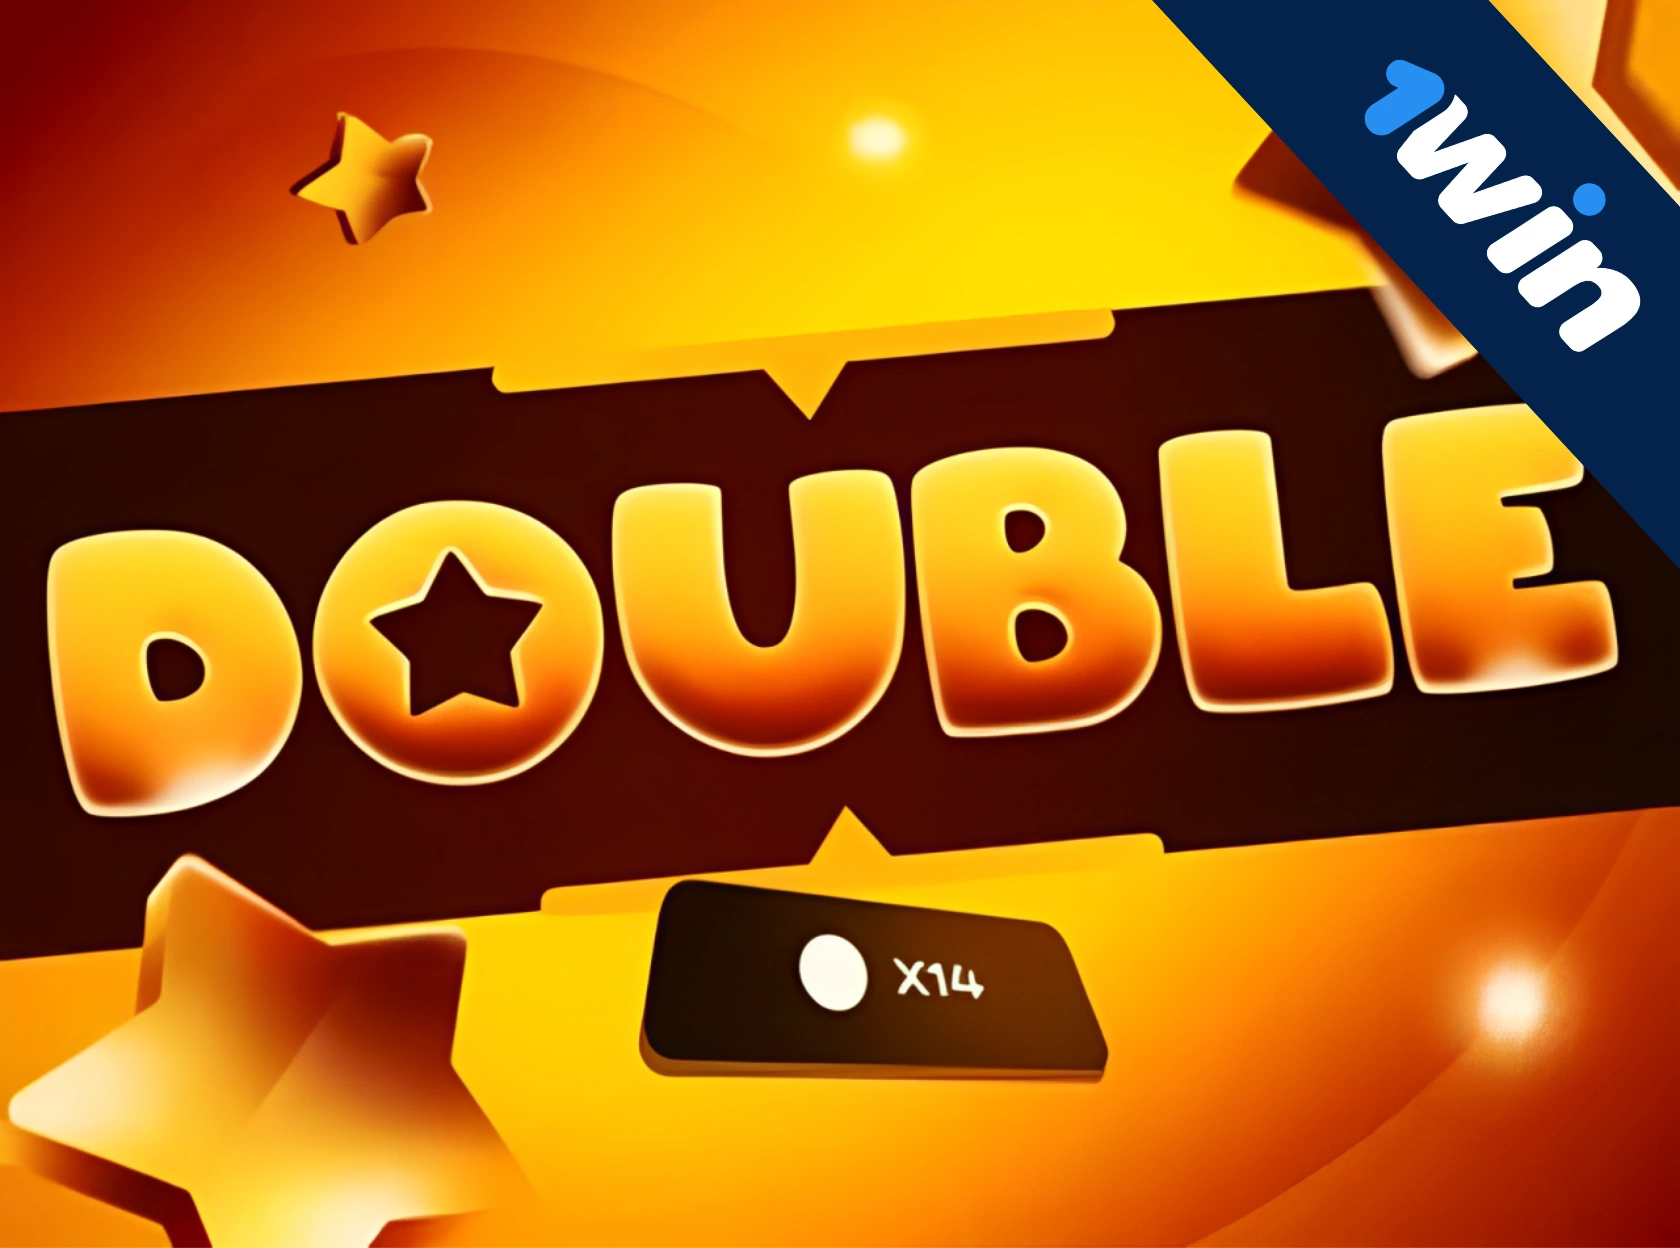 Double 1win - पैसे के लिए खेल ऑनलाइन खेलना